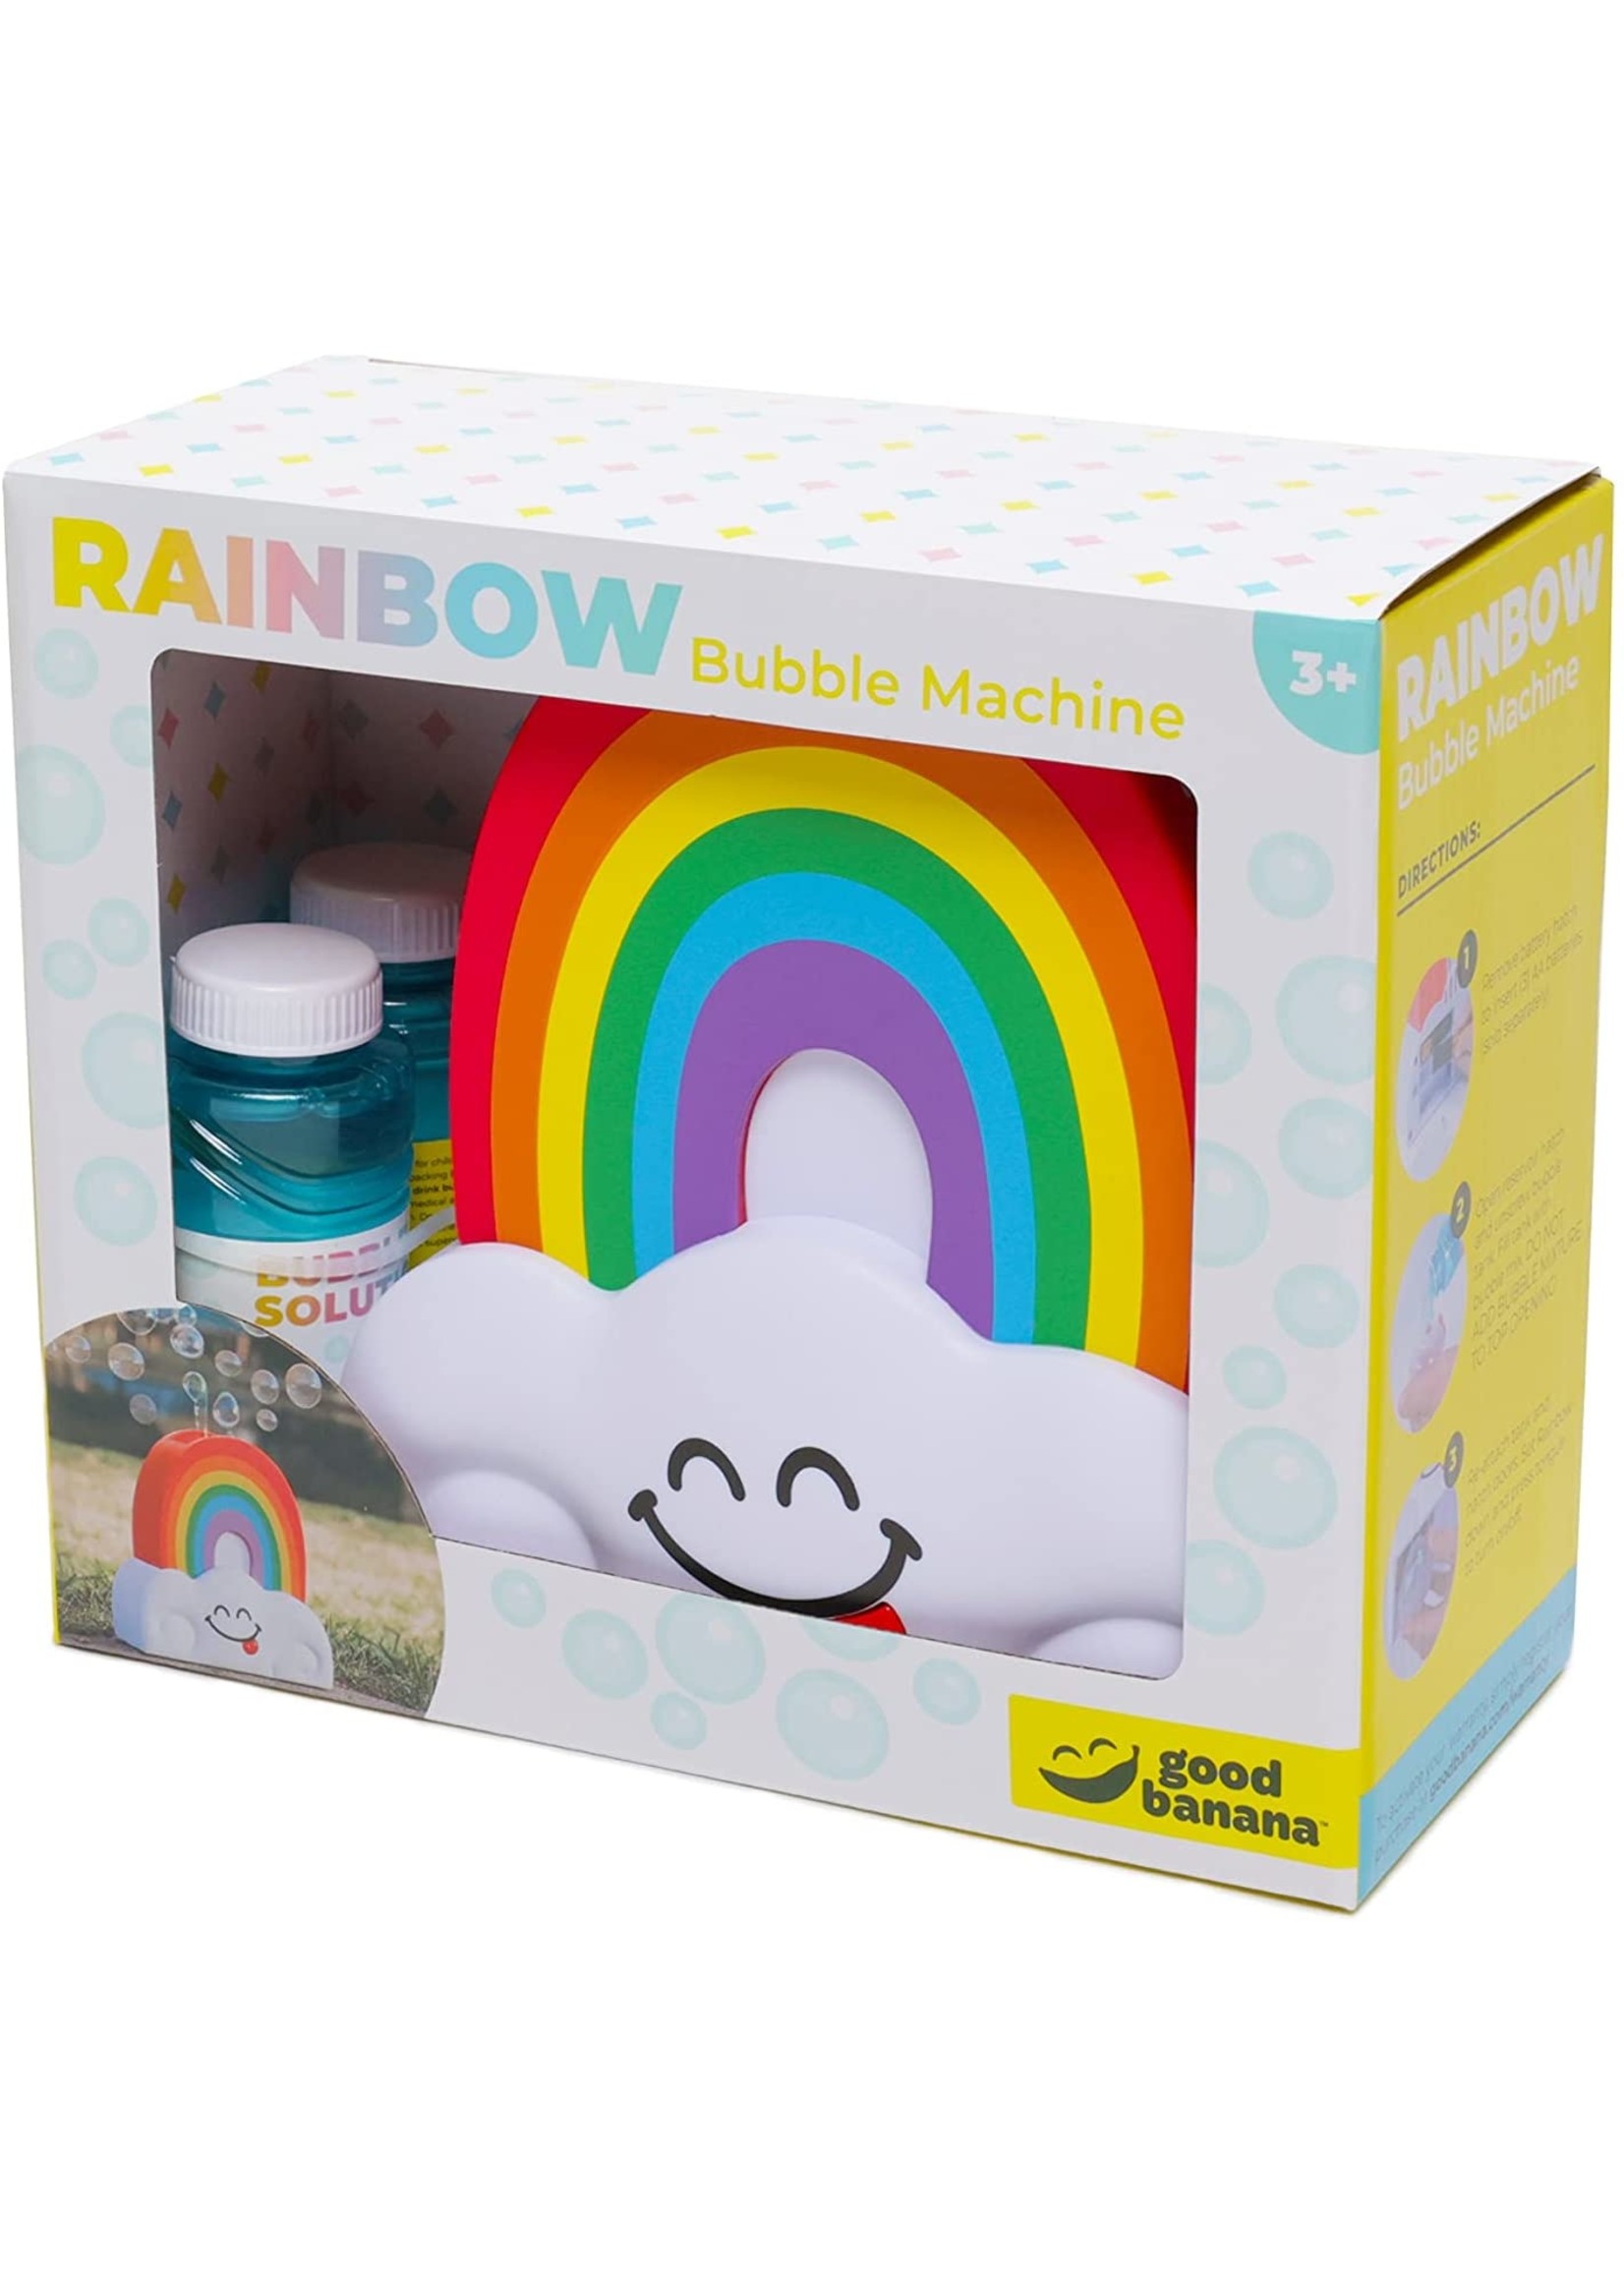 Good Banana Rainbow Bubble Machine